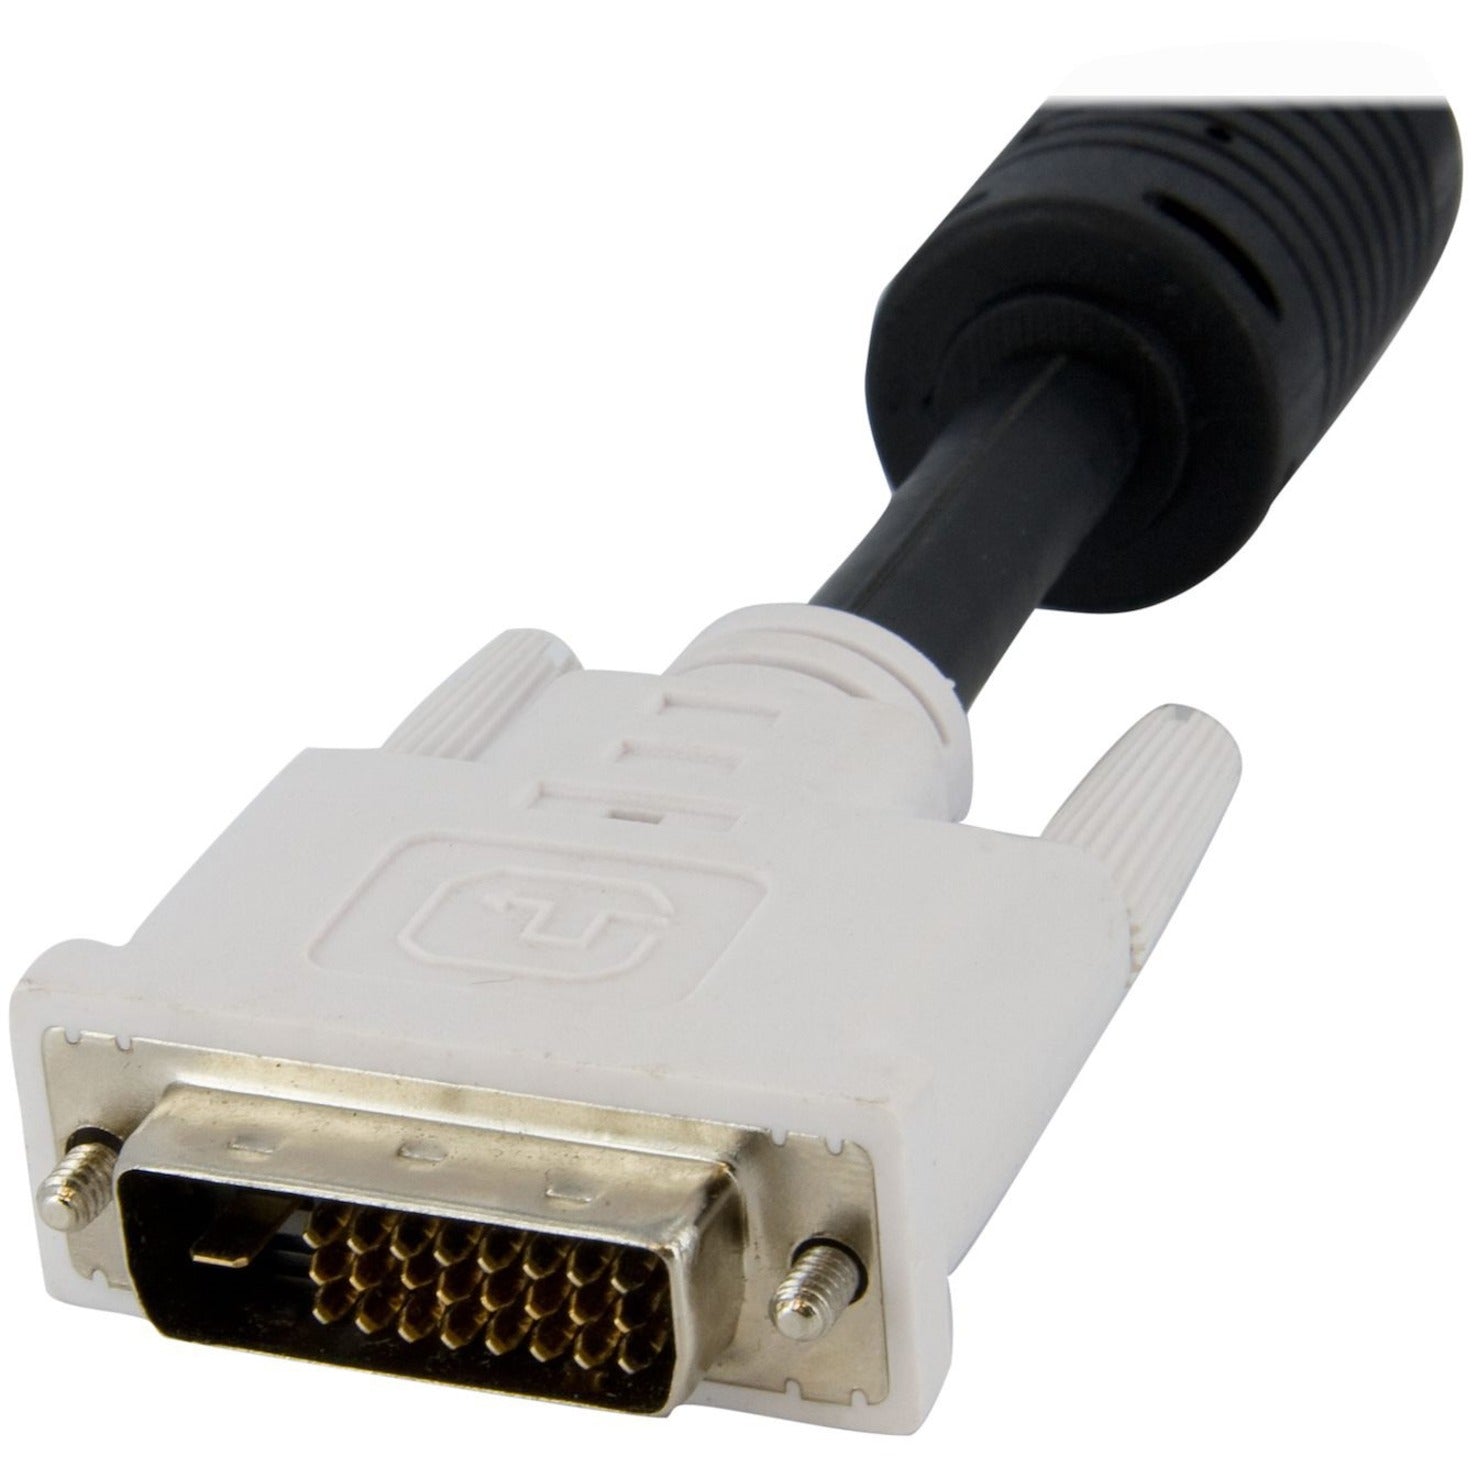 ستارتيك DVID4N1USB6 6 قدم 4 في 1 كابل تبديل KVM USB مزدوج DVI-D مع صوت وميكروفون ، ناقل النحاس ، معدل نقل البيانات 7.9 جيجابت في الثانية متوقف   ستارتيك.كوم